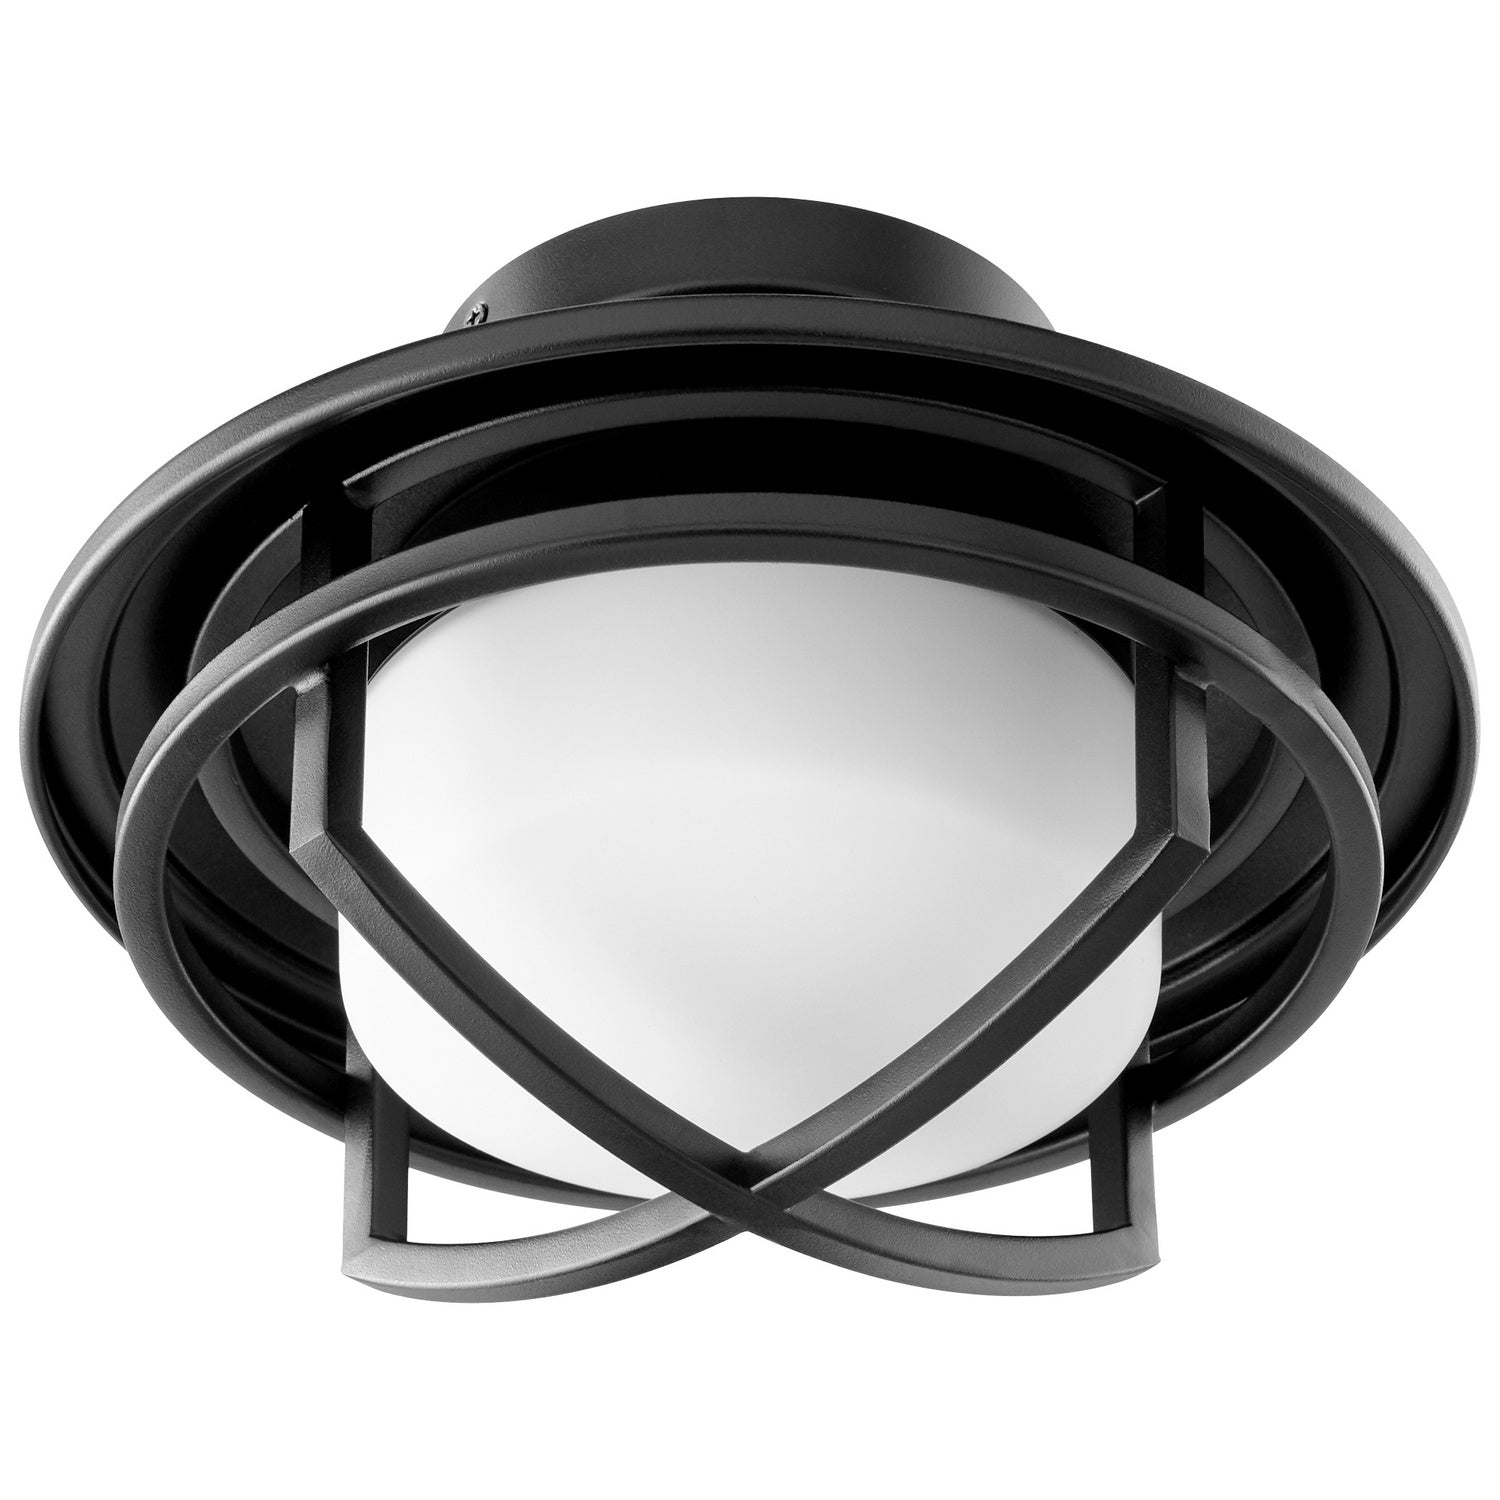 Oxygen - 3-1084-15 - LED Fan Light Kit - Fleet - Black